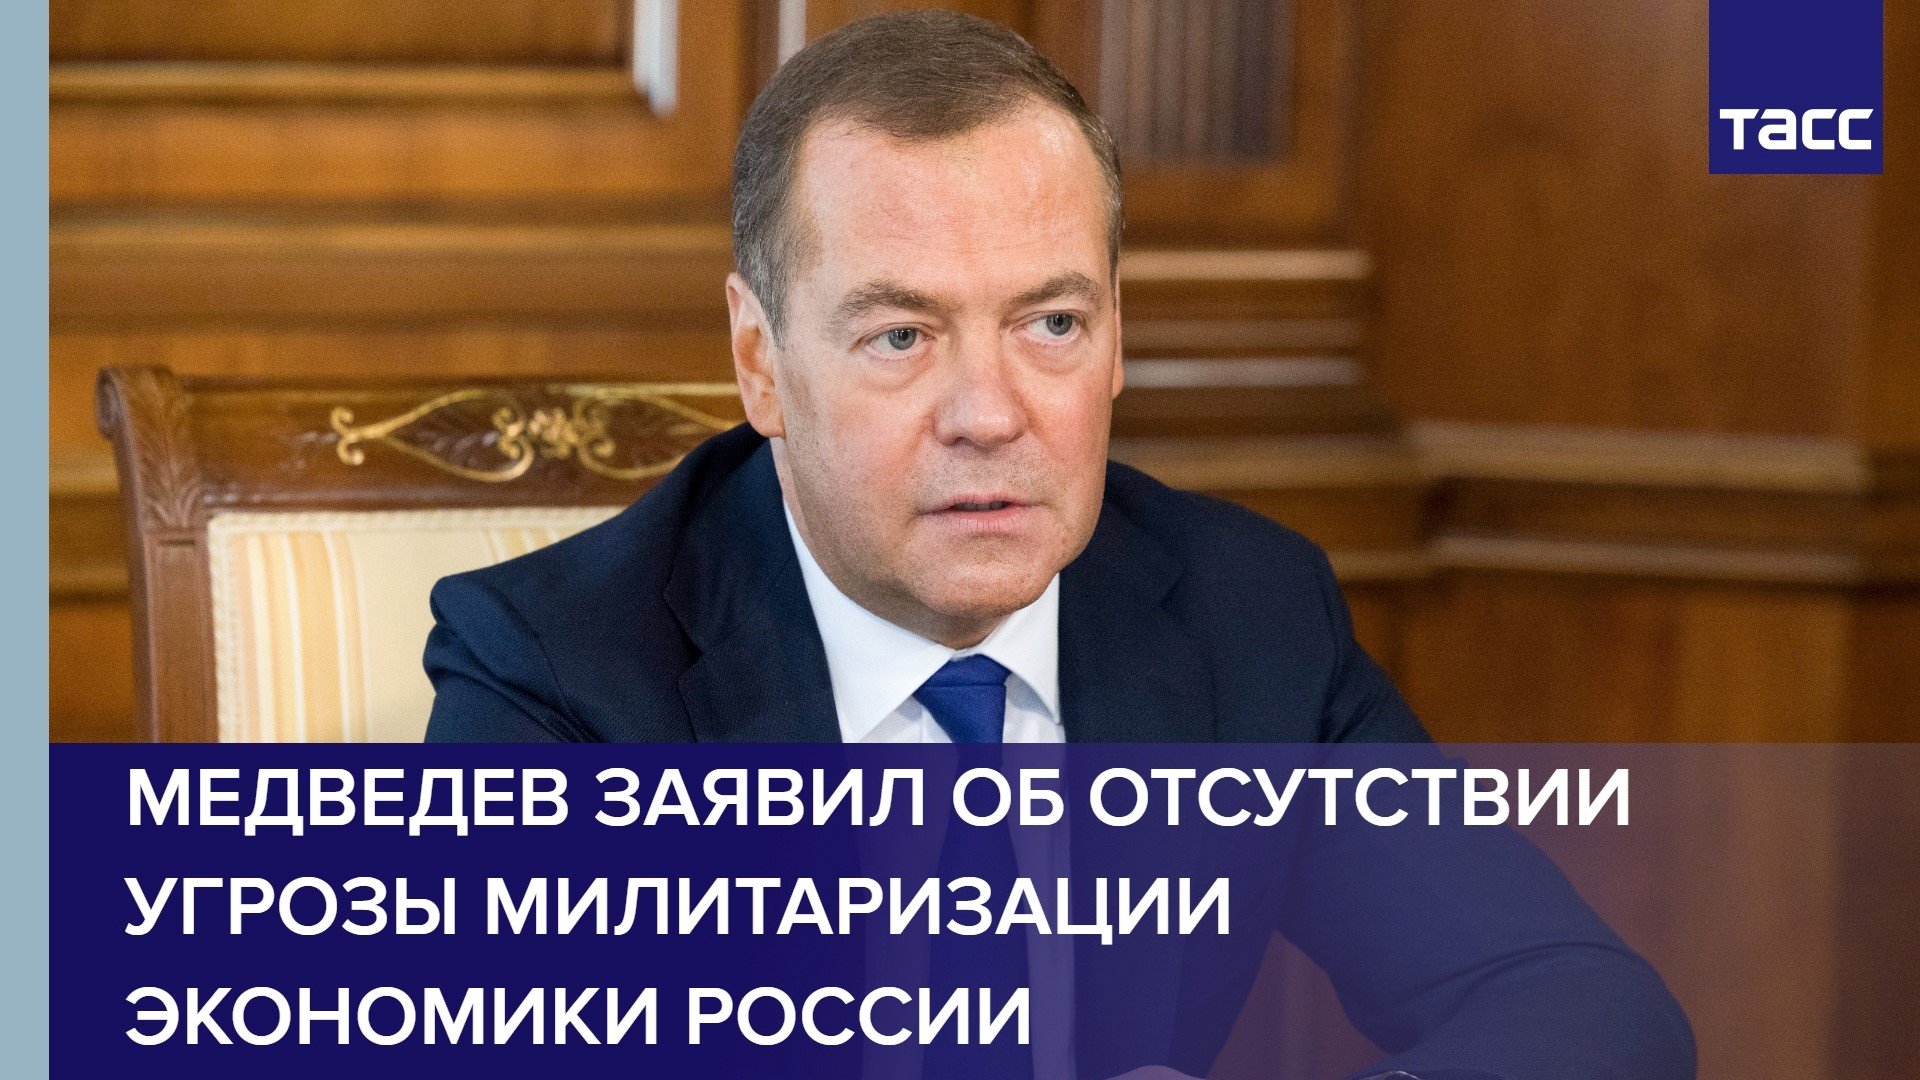 Медведев заявил об отсутствии угрозы милитаризации экономики России